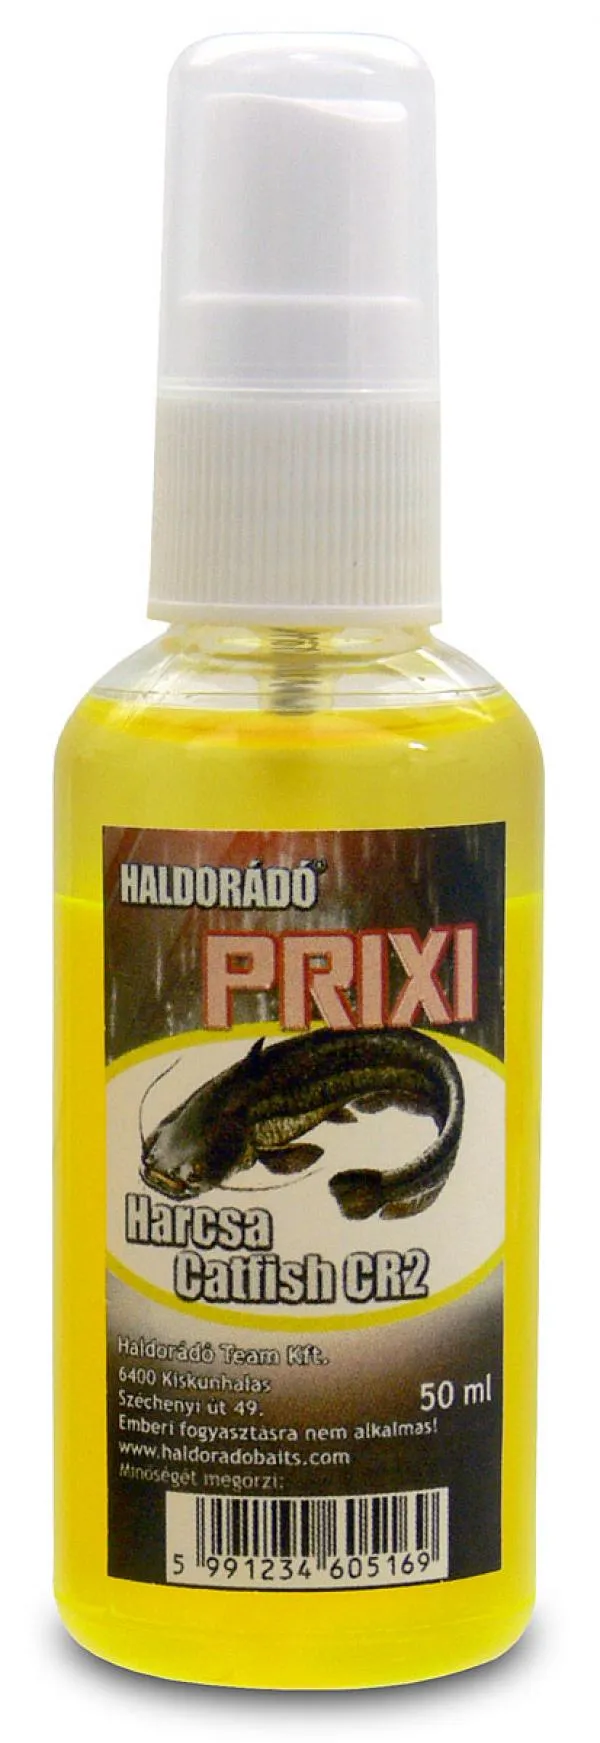 Haldorádó PRIXI ragadozó aroma spray - Harcsa/Catfish CR2...